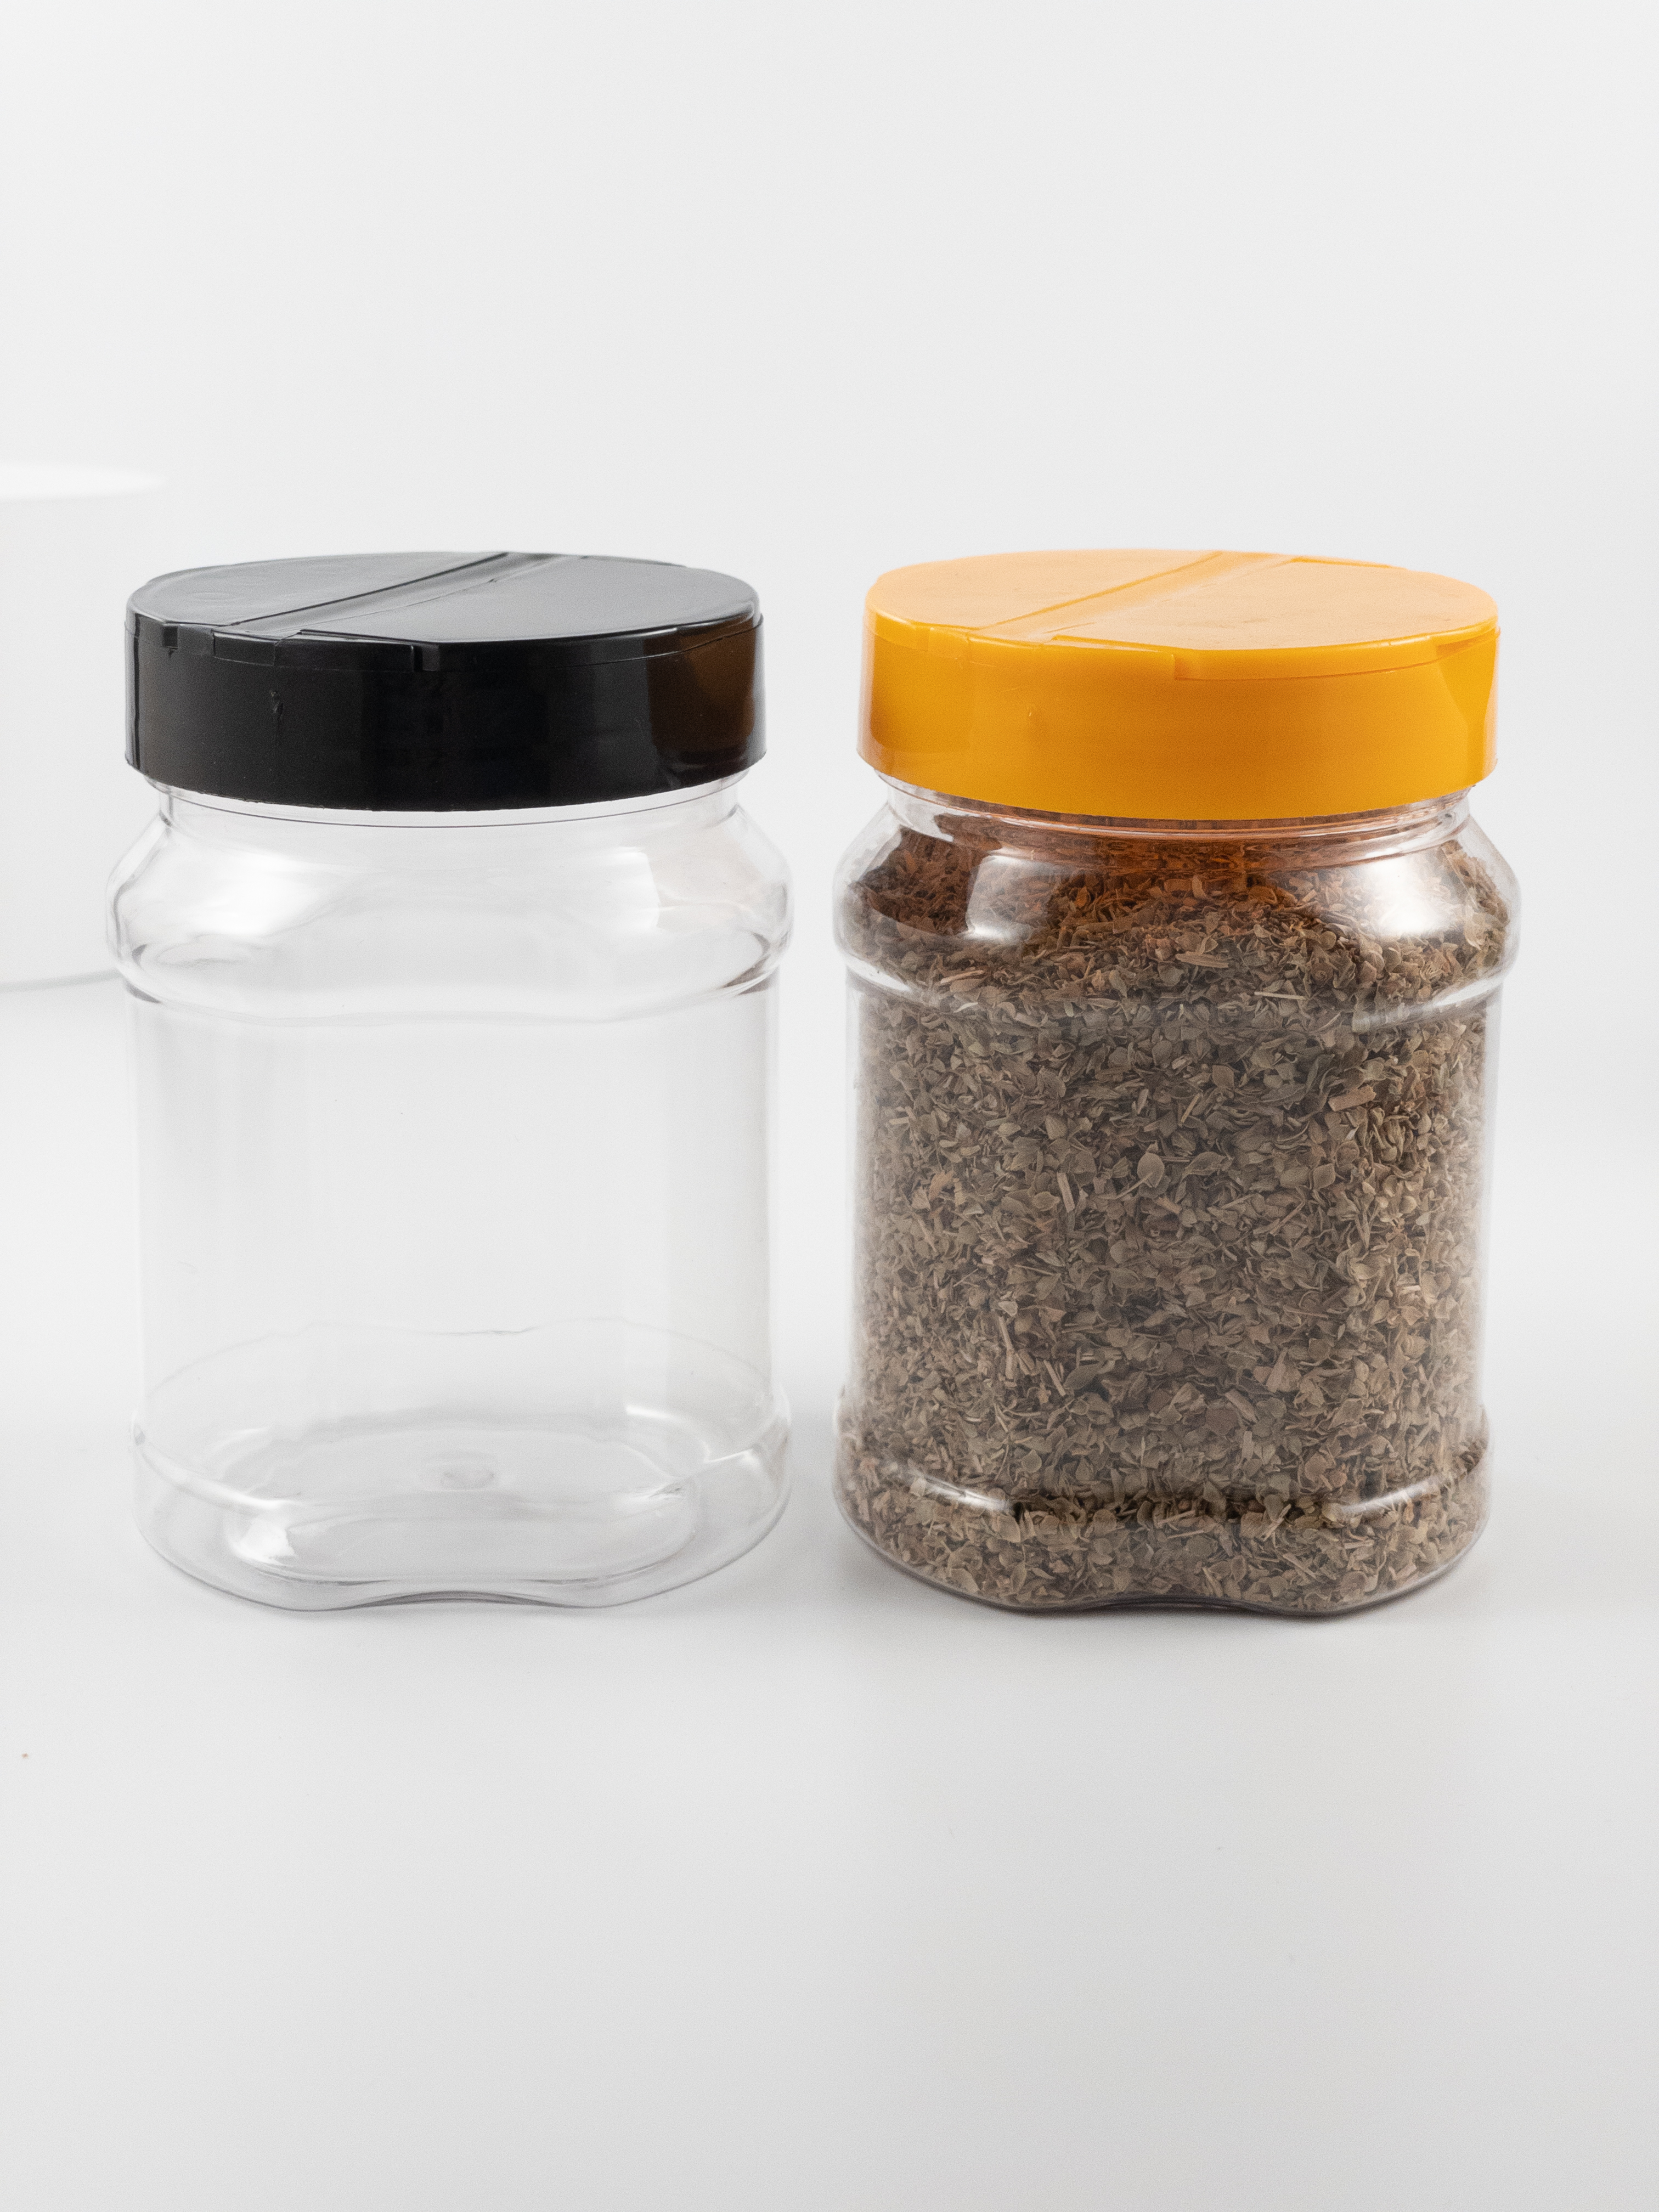  廠家批發300ML方形食品塑料廣口瓶 塑料糖果罐子 PET透明食品包裝